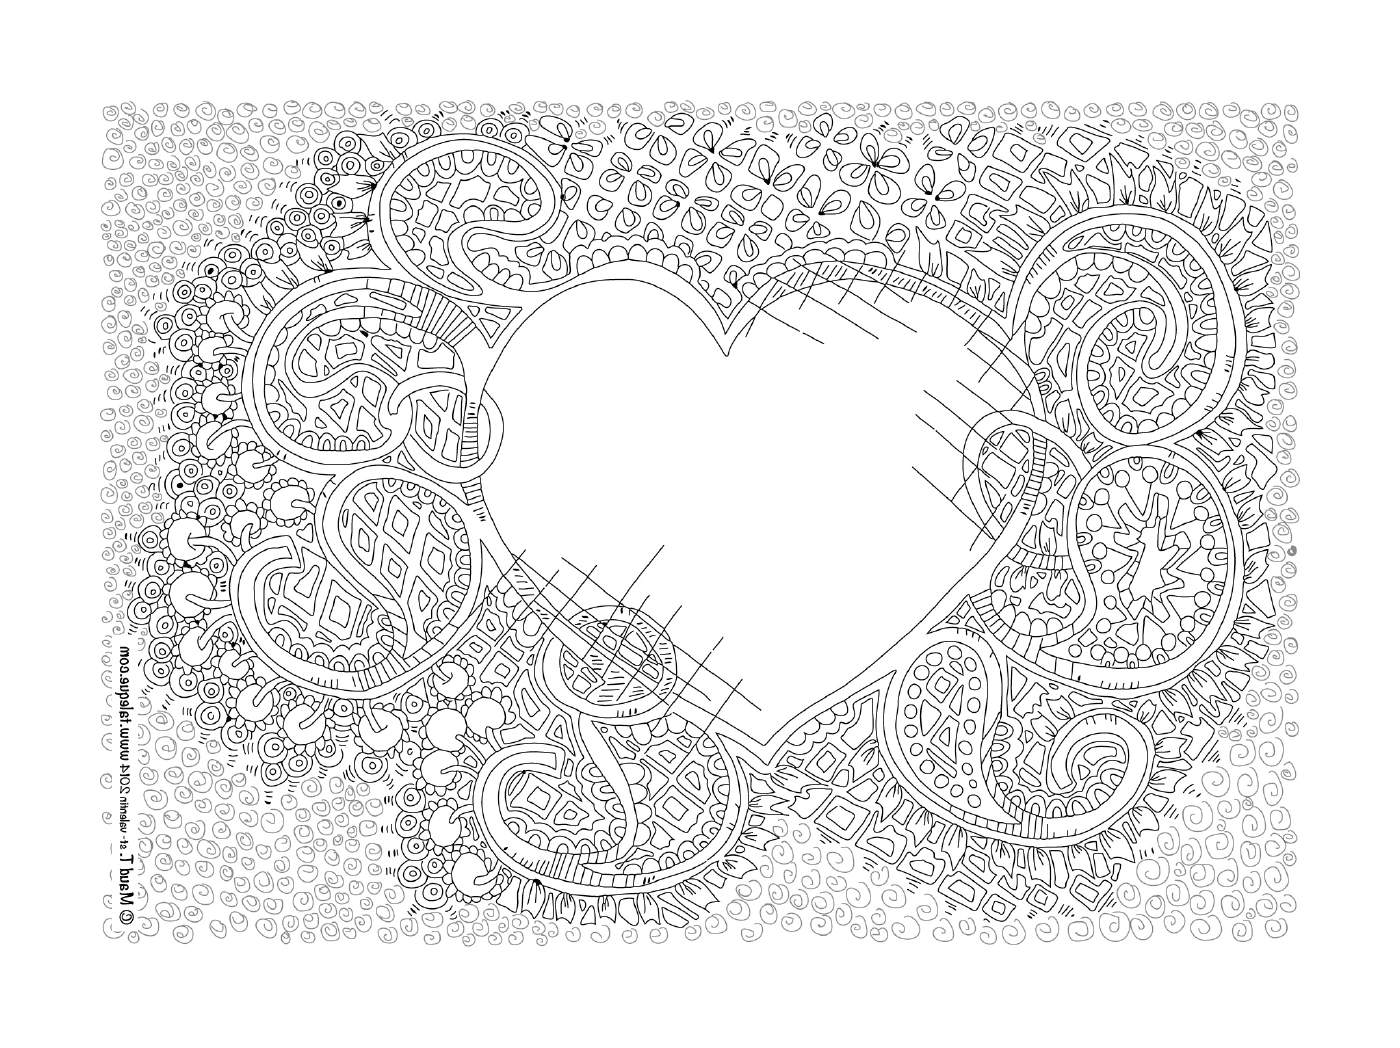  Un corazón en forma de mandala con un motivo floral 